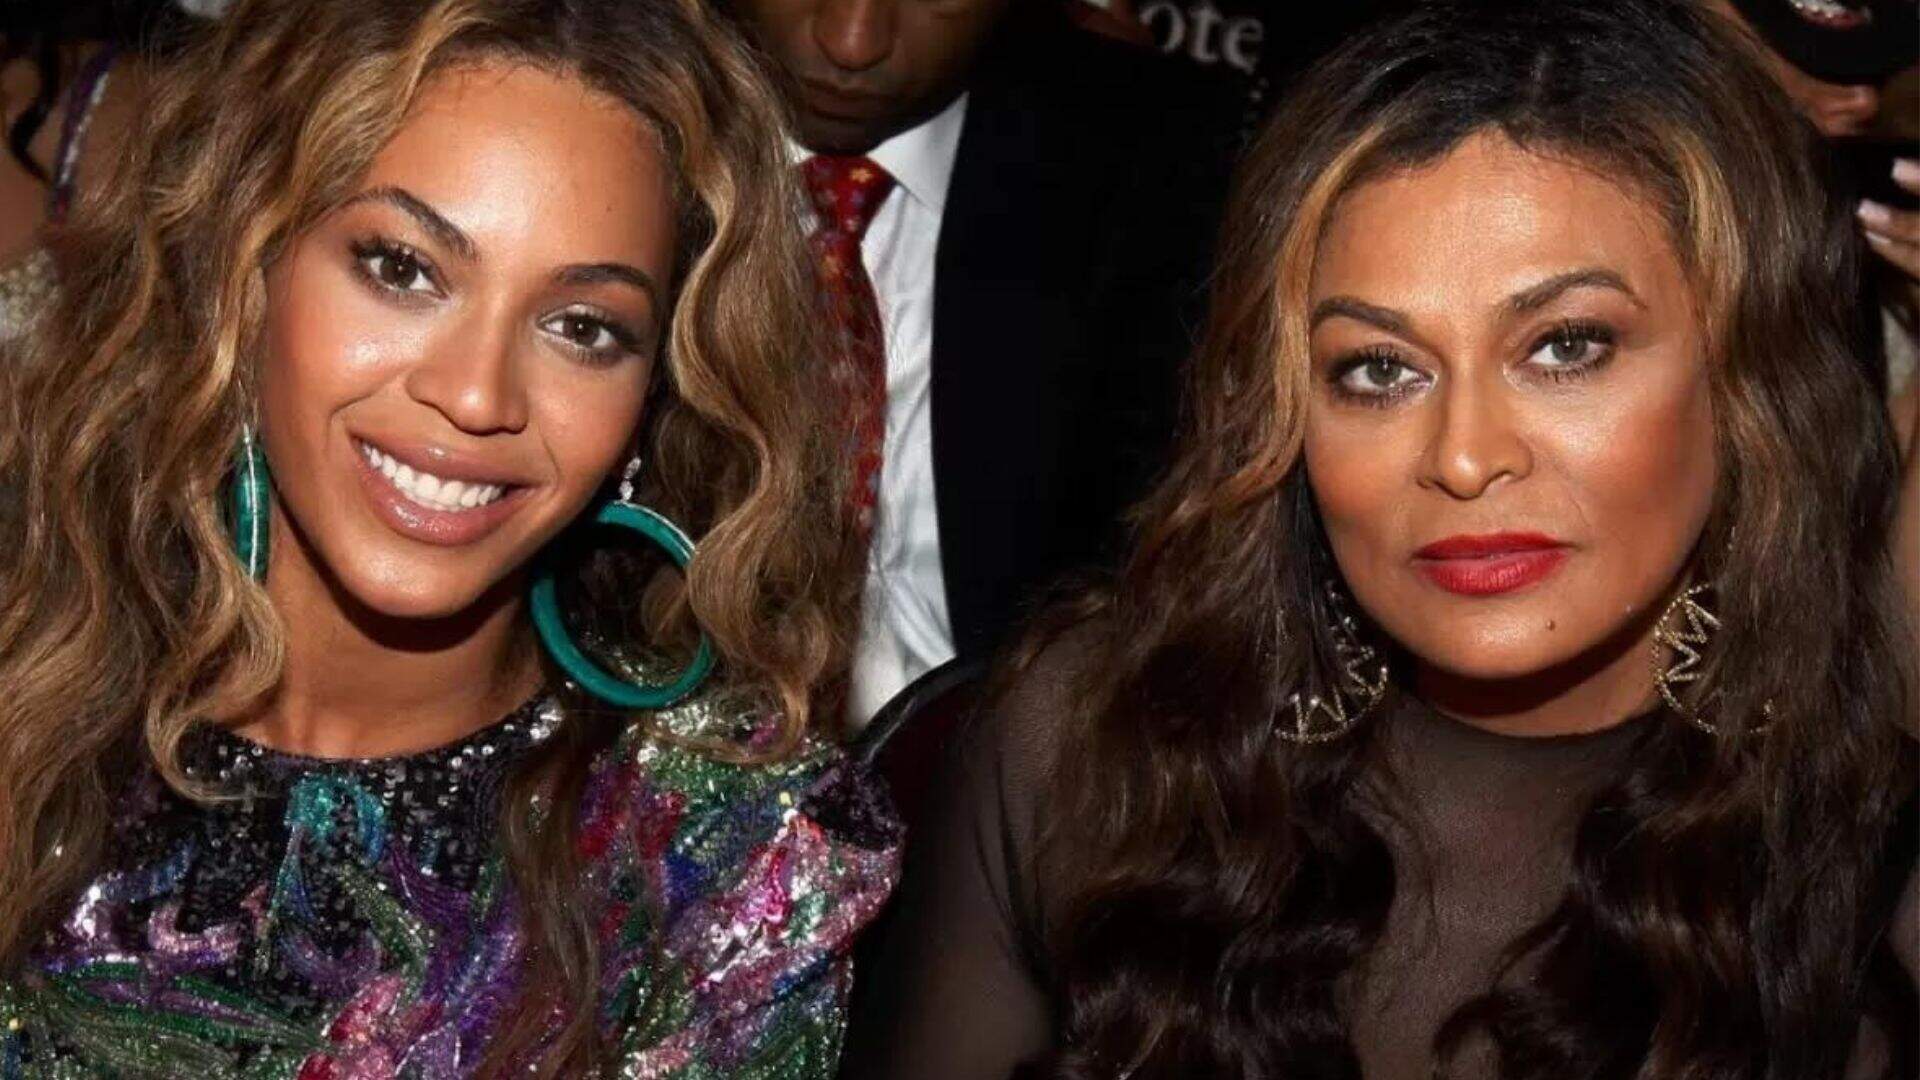 Tina Knowles, mãe de Beyoncé, tem mansão invadida e bandidos causam prejuízo milionário